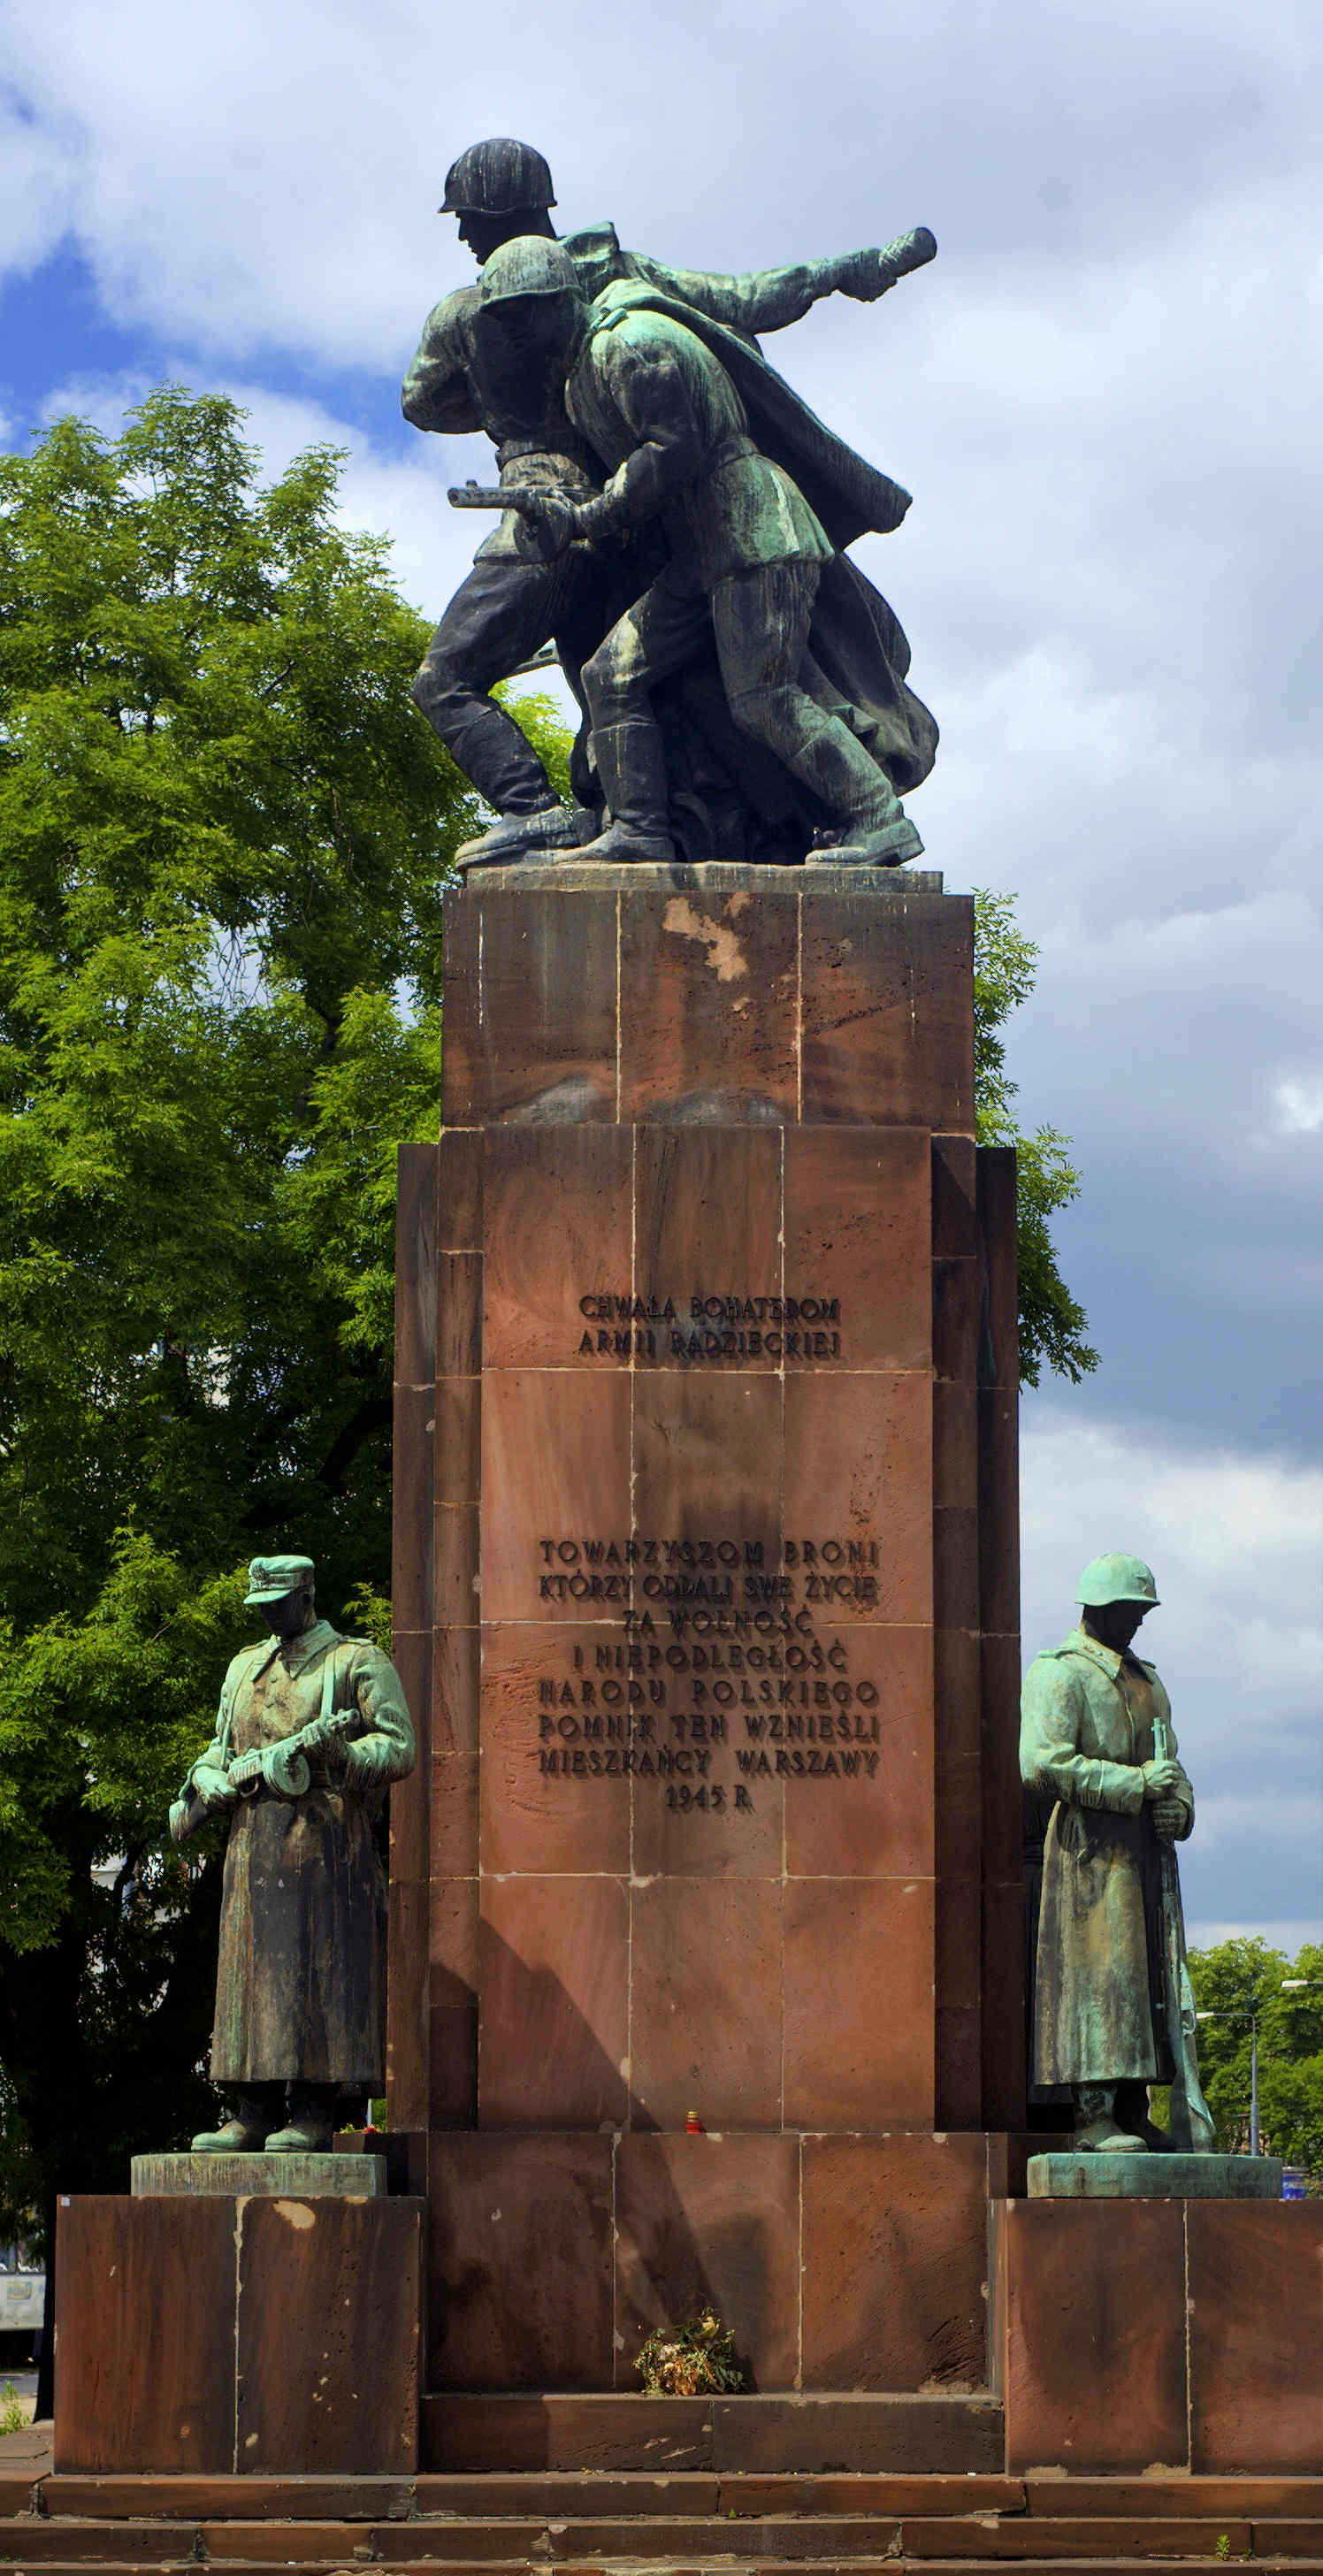 Monumento alla fratellanza d’armi sovietico-polacca